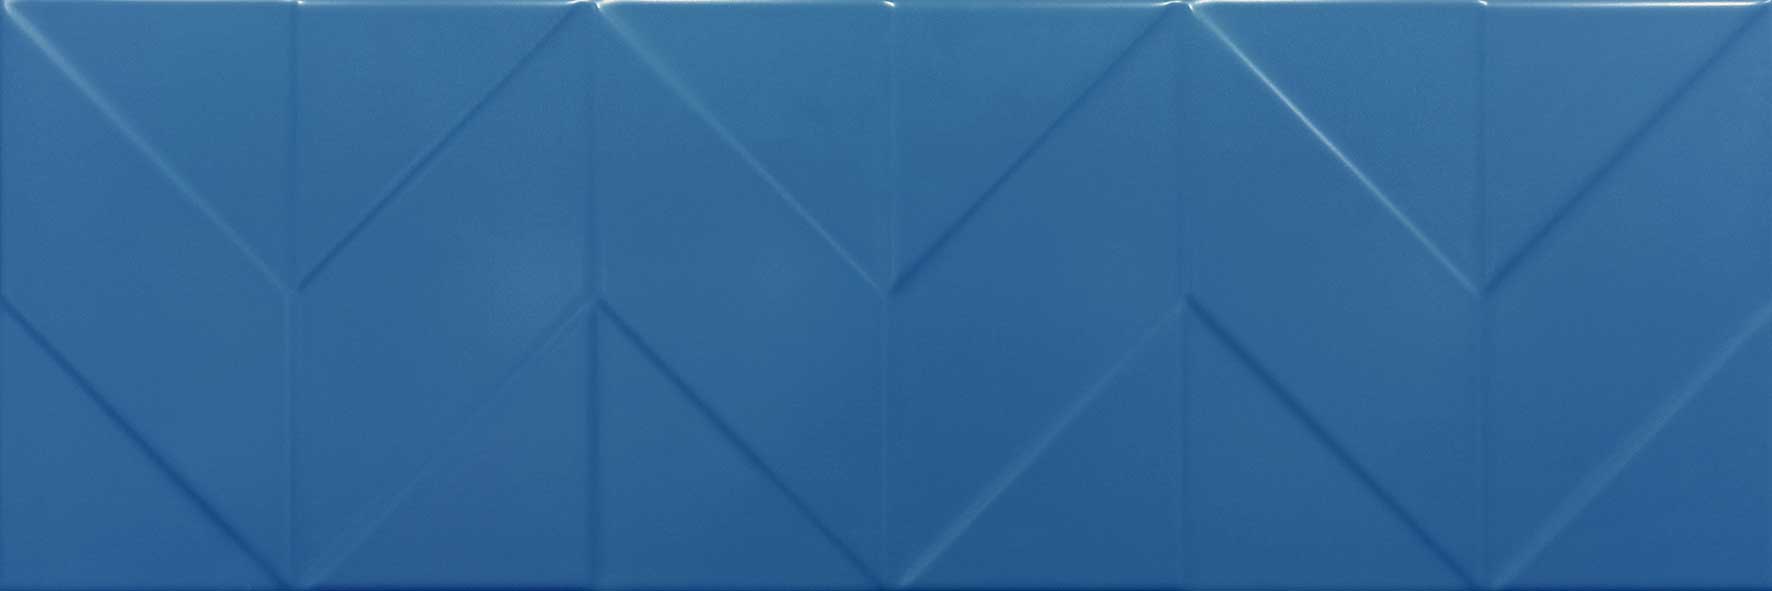 Керамическая плитка Керамин Танага 2Д Синий, цвет синий, поверхность сатинированная, прямоугольник, 250x750